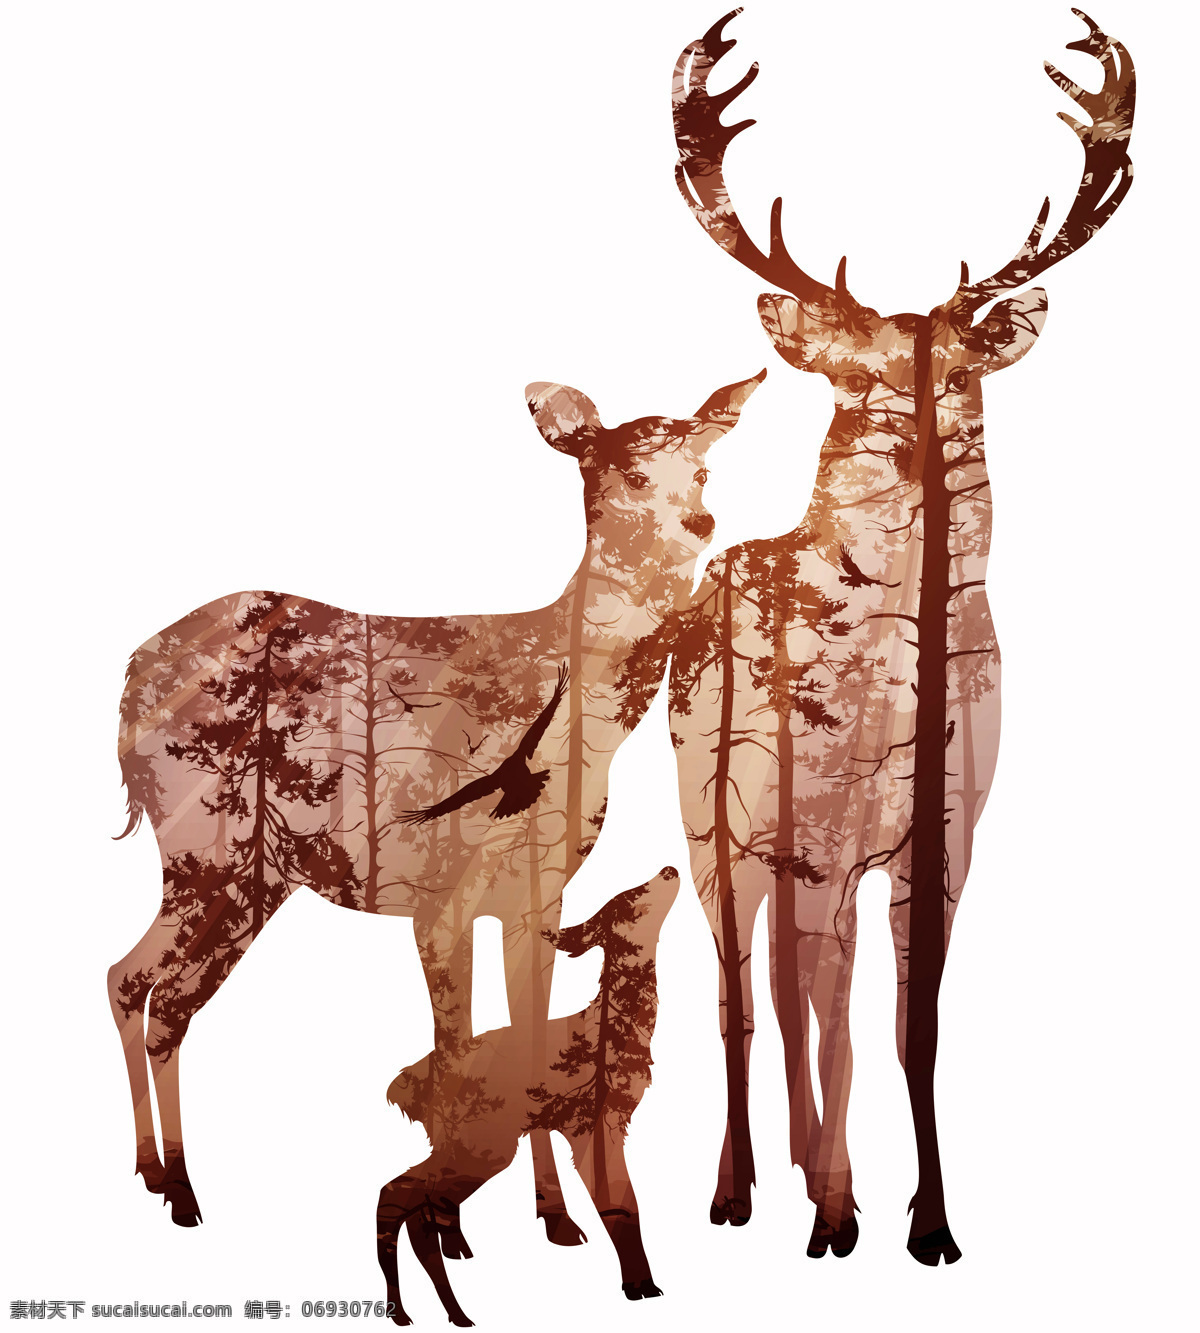 麋鹿 装饰 墙贴素材 北欧 风格 温馨 灵动 装饰画 森林麋鹿装饰 装饰行业 设计素材